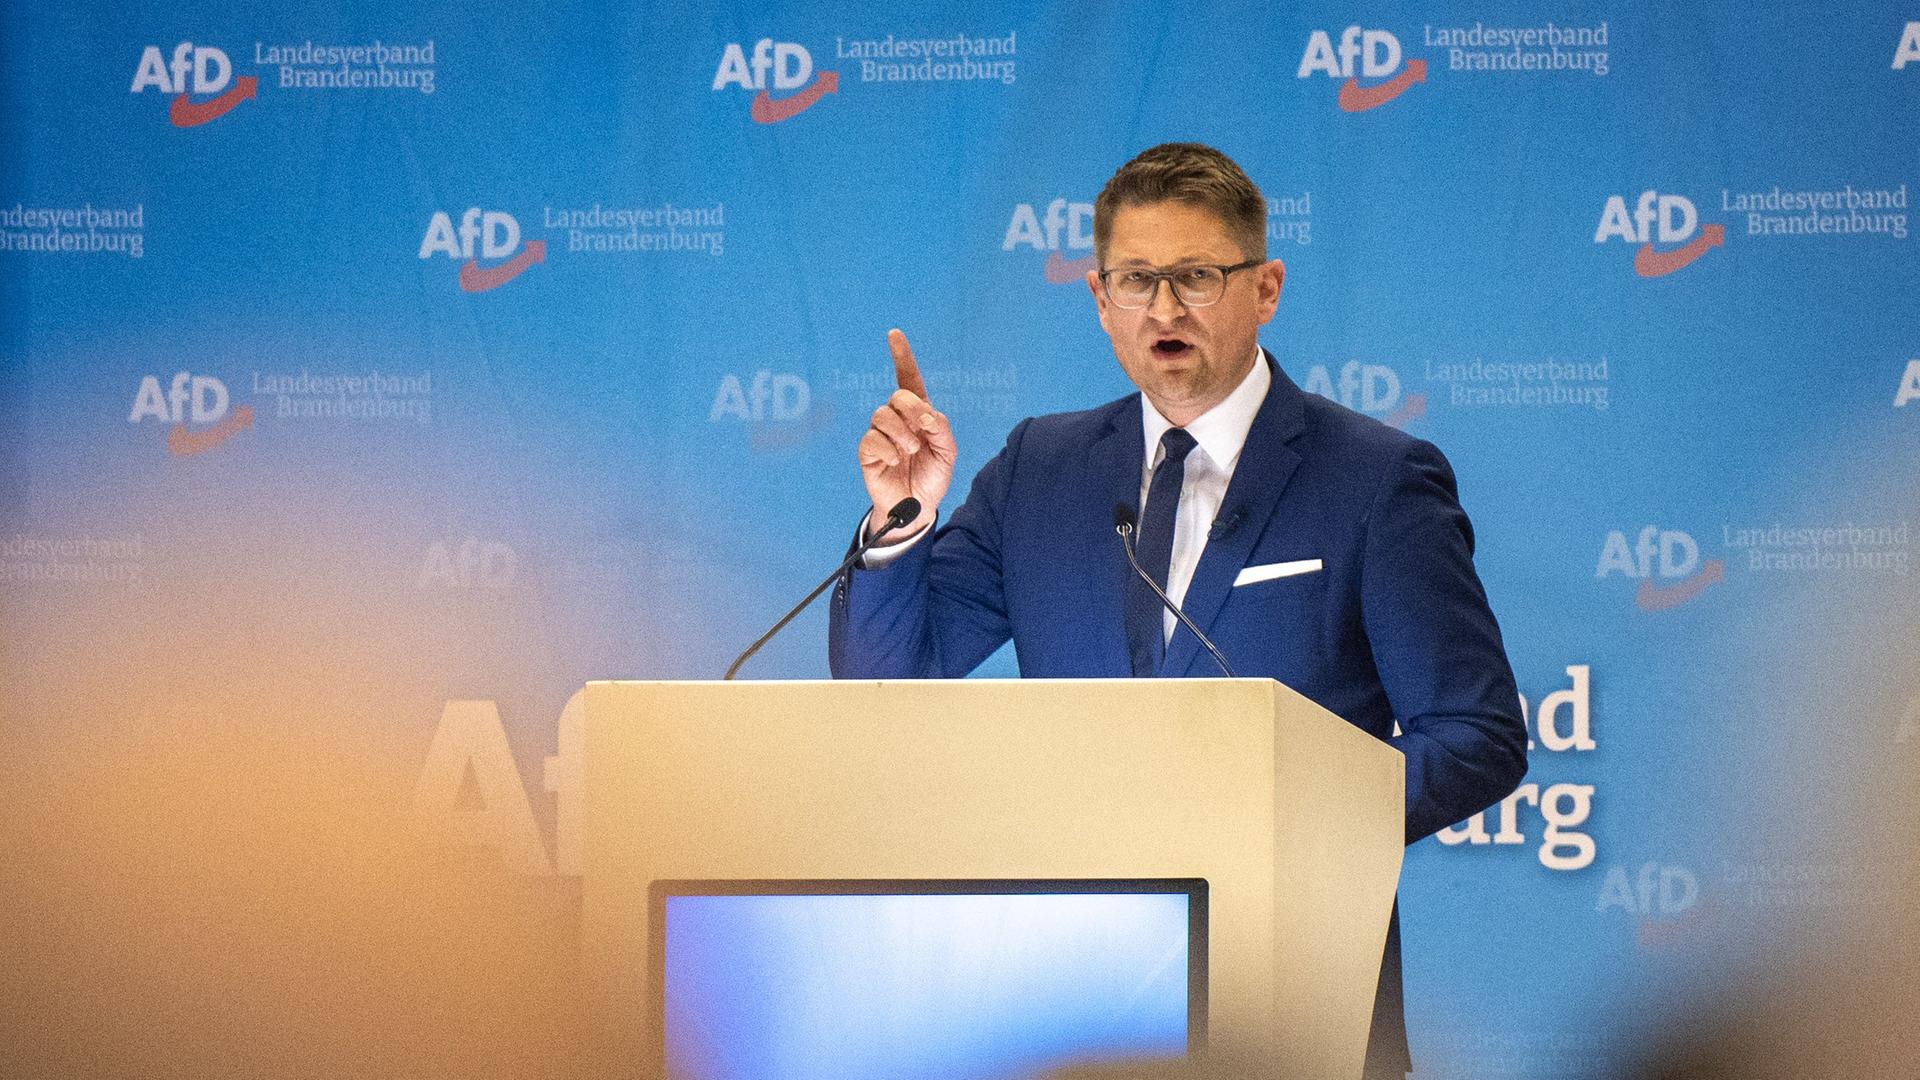 Rene Springer, Kandidat für den Landesvorsitz, spricht auf der Bühne beim Landesparteitag der AfD Brandenburg.